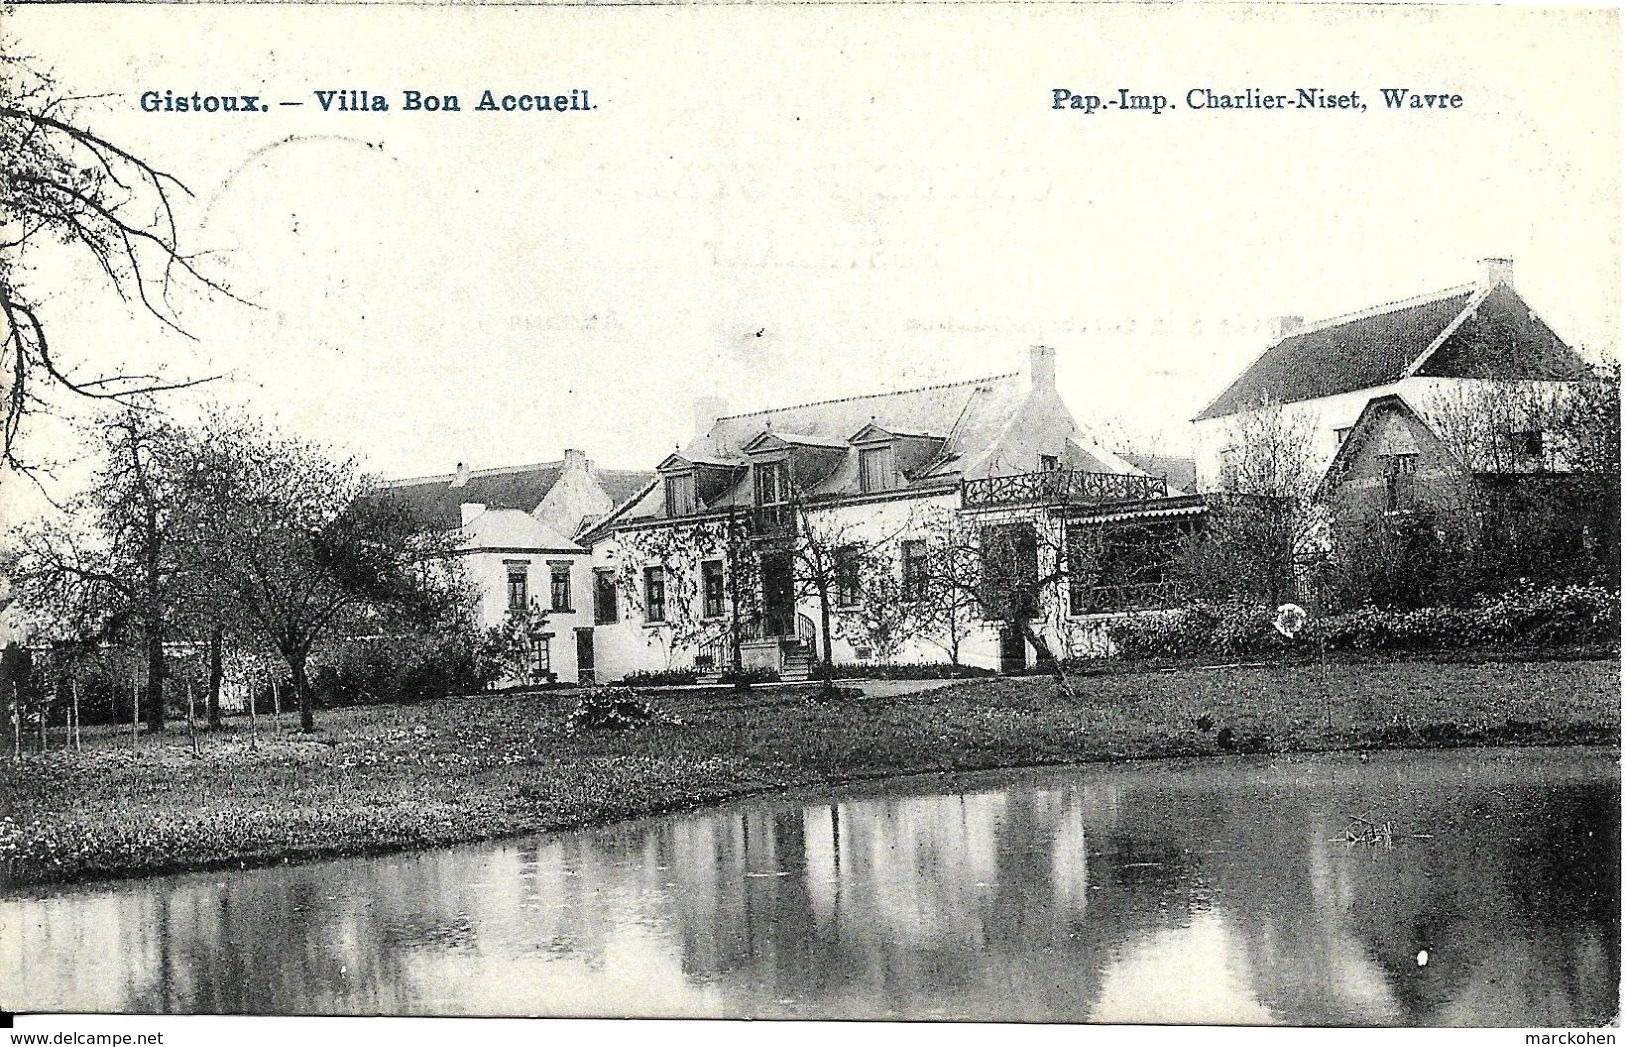 Gistoux (1325) : Villa Bon Accueil, Avec Timbre Et Cachet De La Censure Militaire Allemande. CPA. - Chaumont-Gistoux